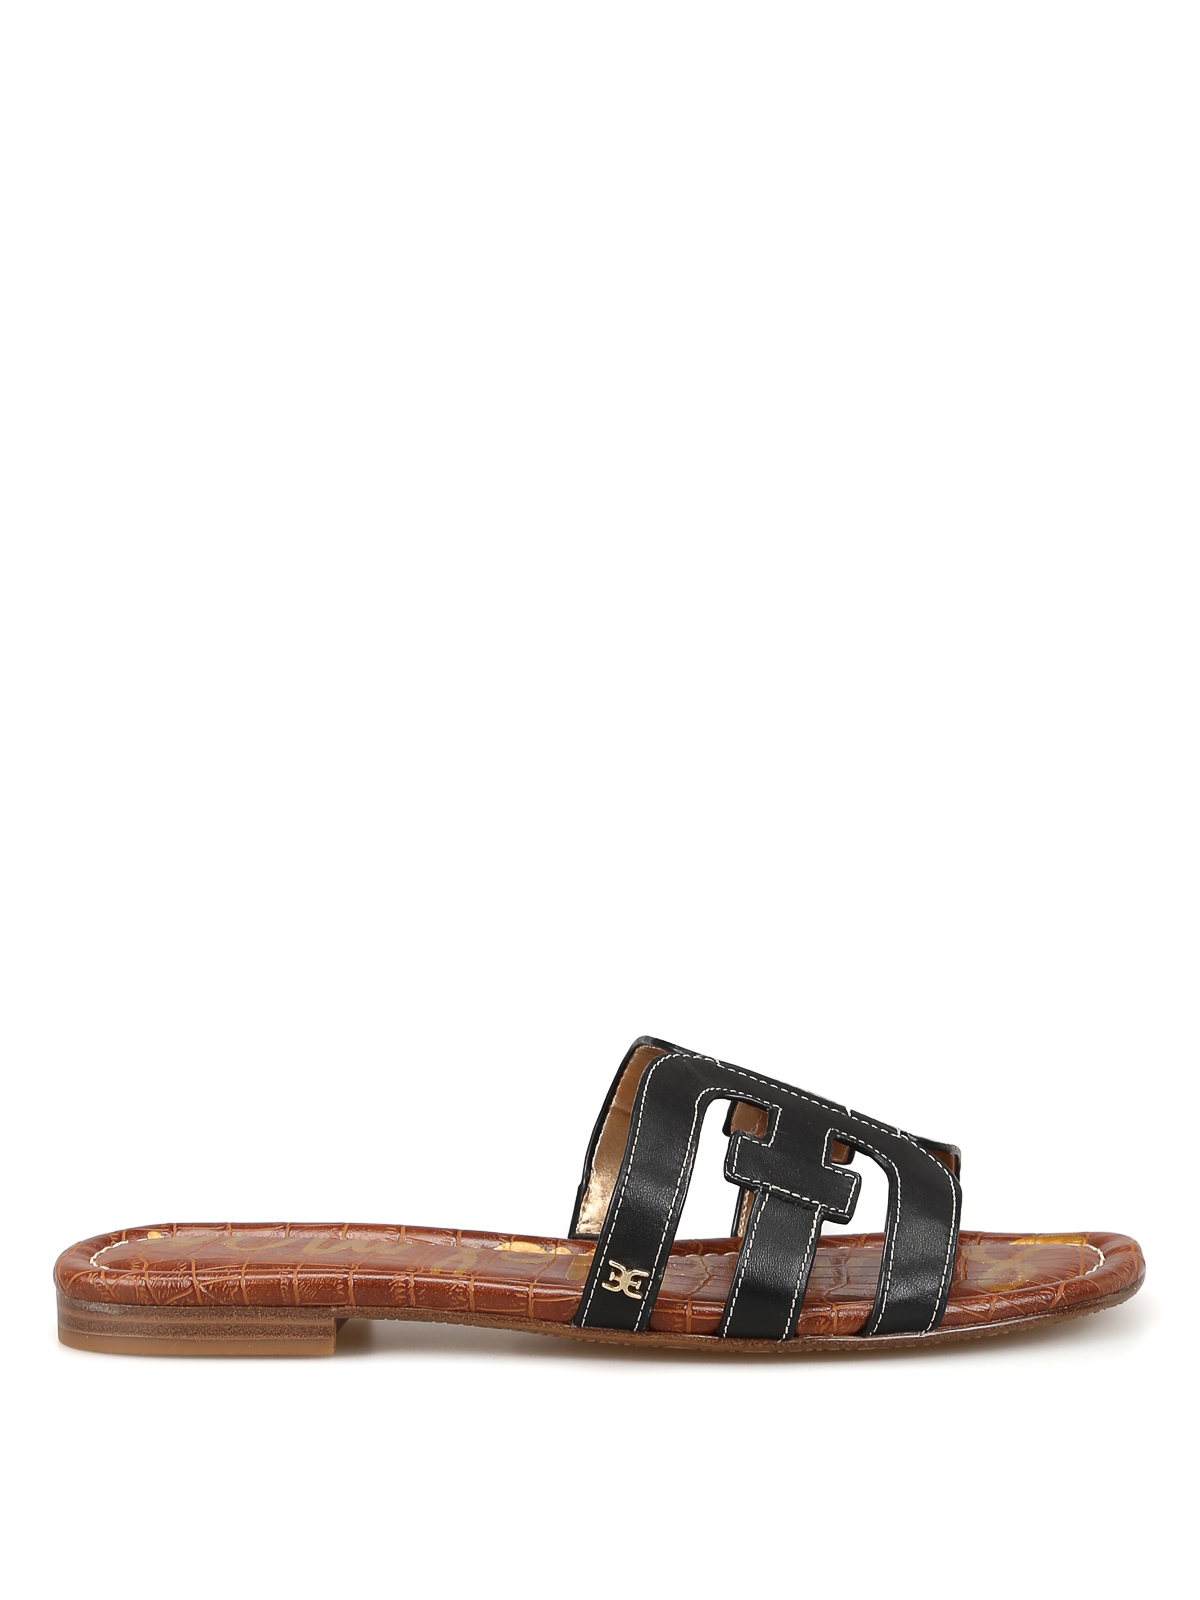 Sandals Sam Edelman - Bay black leather slide sandals - F6992L4001BAY